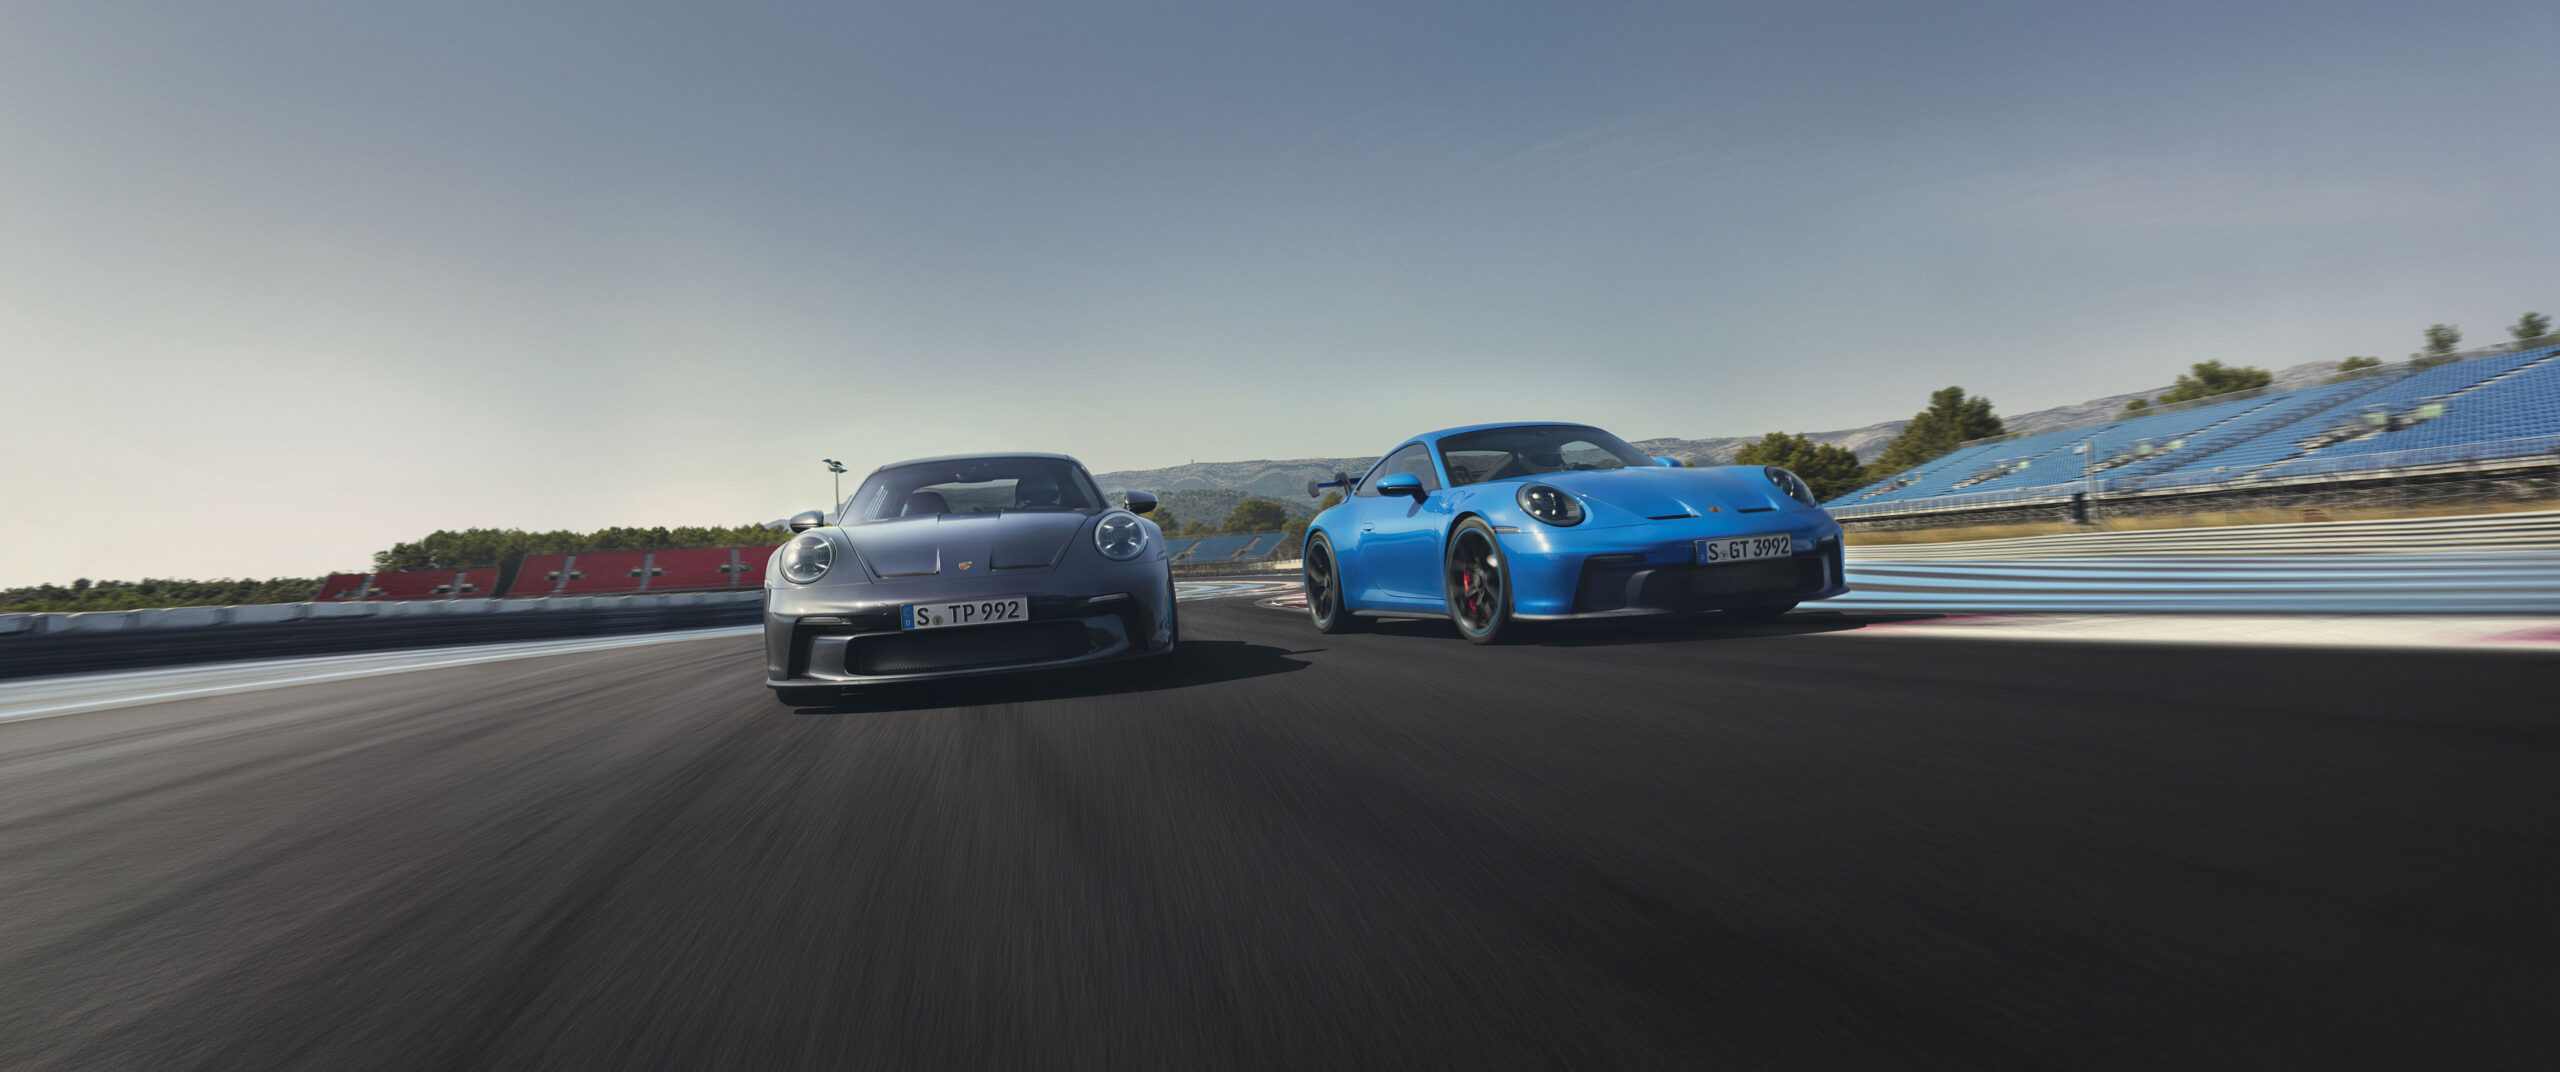 Porsche 911 GT3 and GT3 Touring